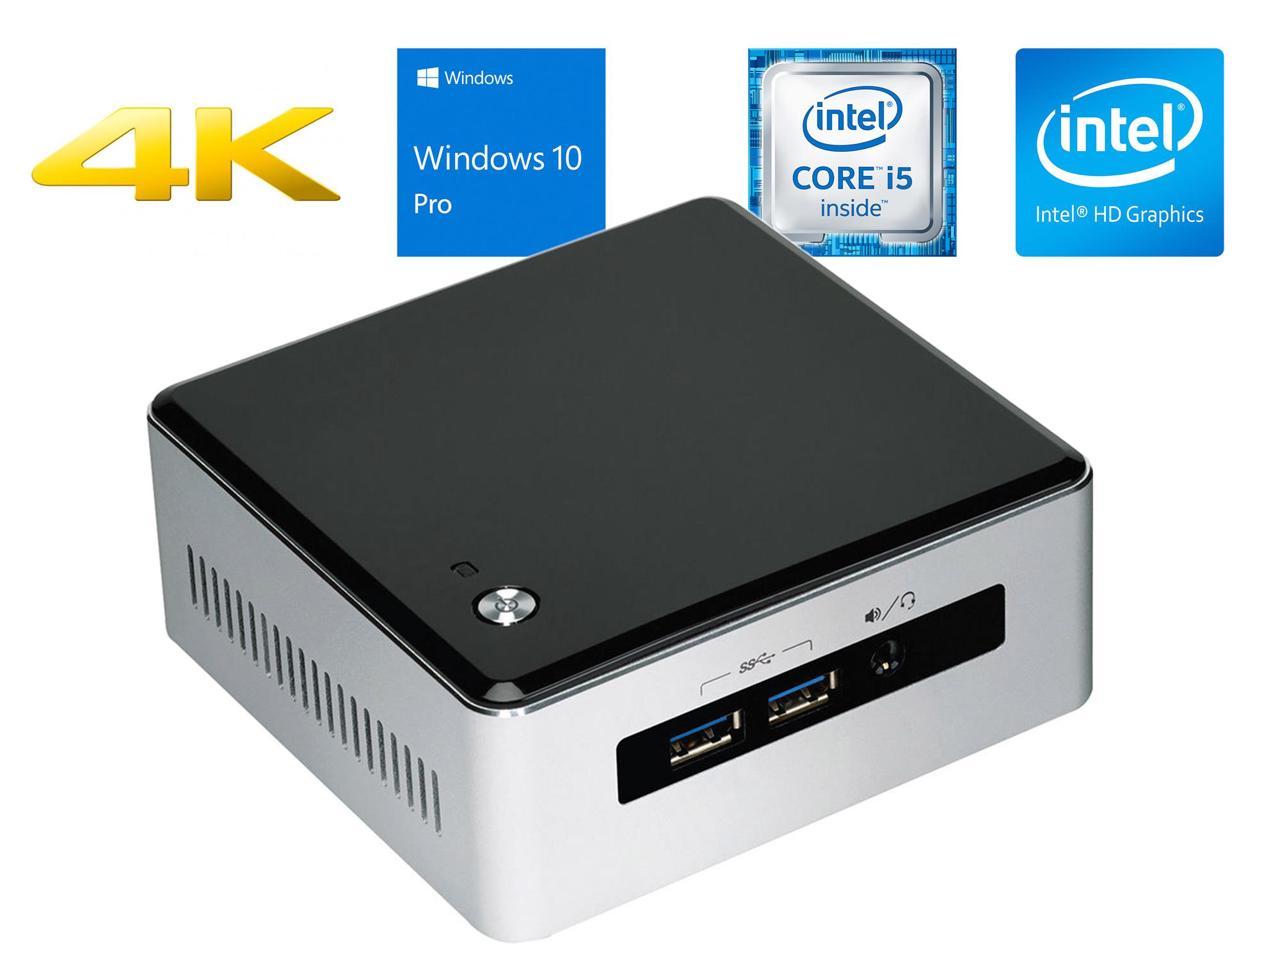 Intel NUC5i5RYH Mini Desktop, Intel Dual-Core i5-5250U Upto 2.7GHz, 8GB RAM, 256GB SSD, MiniDP, MiniHDMI, Wi-Fi, Bluetooth, Windows 10 Pro